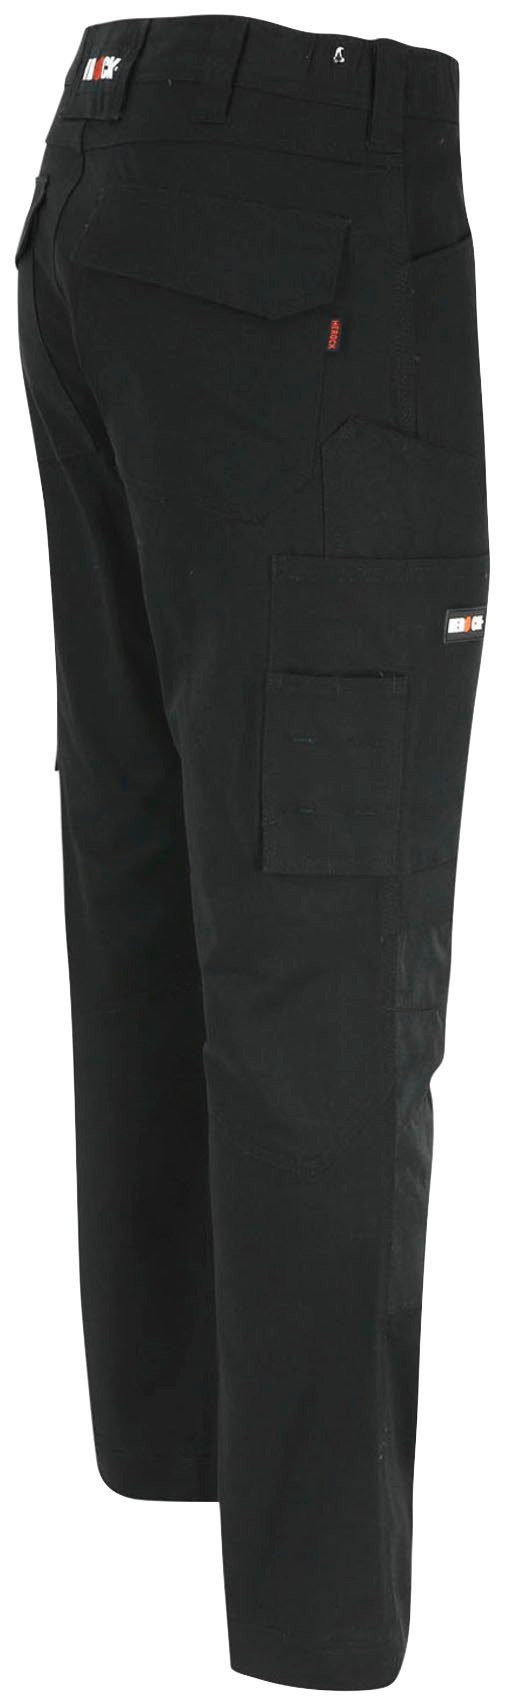 Herock Arbeitshose DERO 2-Wege-Stretch, schwarz Passform, wasserabweisend Fit Multi-Pocket, Slim